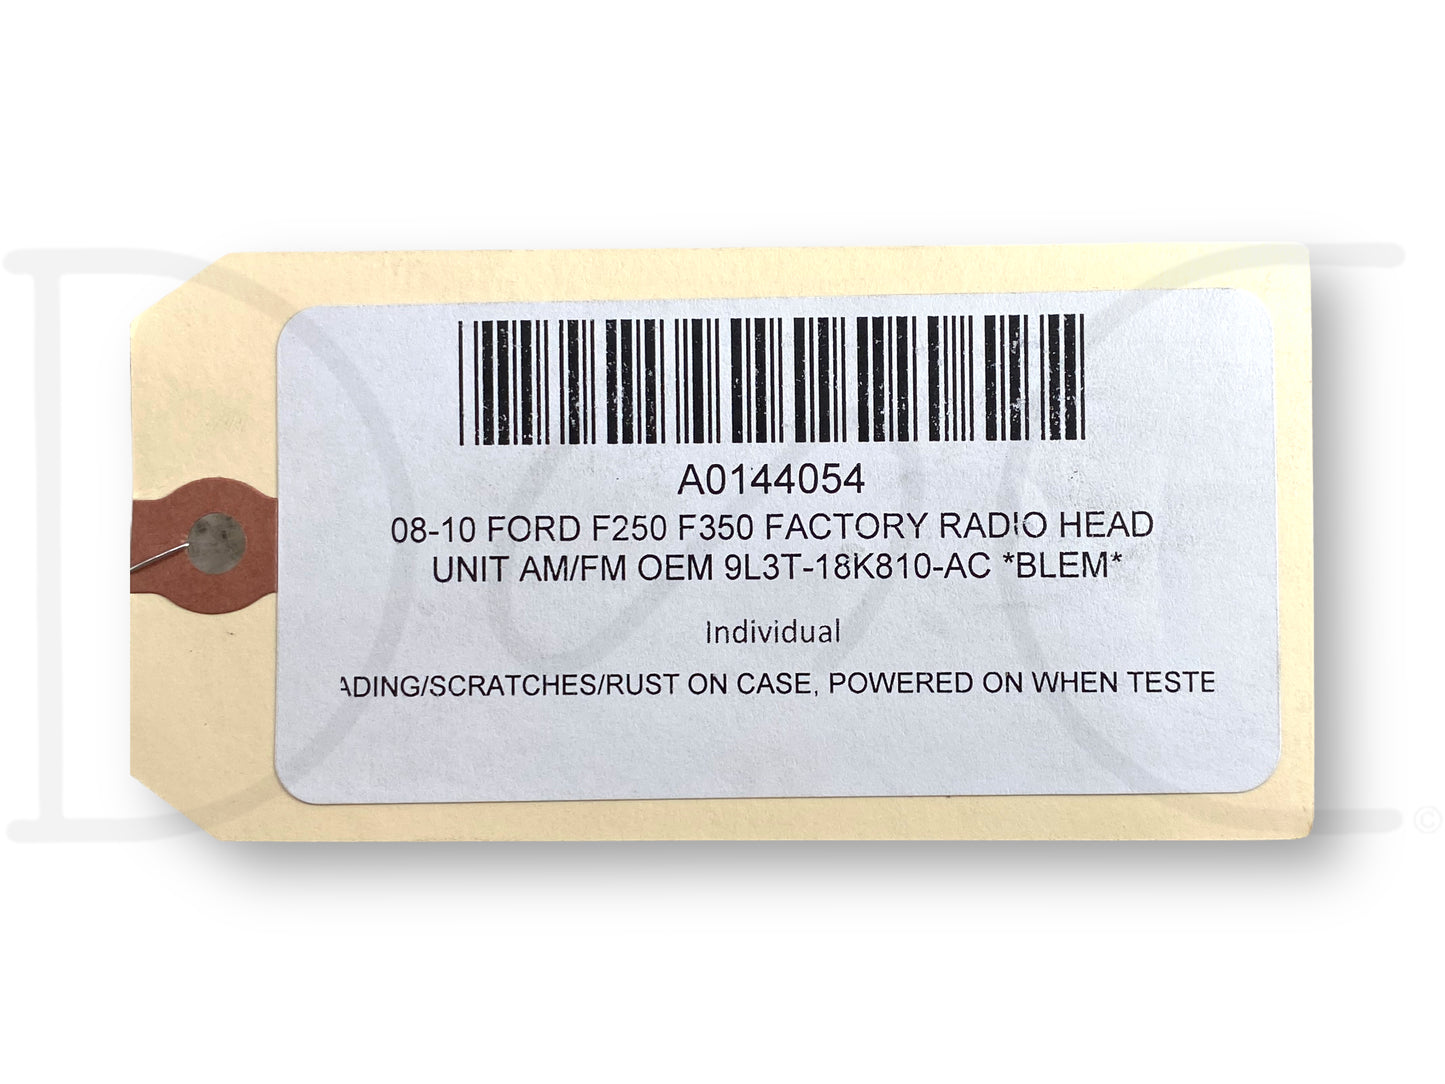 08-10 Ford F250 F350 Factory Radio Head Unit Am/Fm OEM 9L3T-18K810-Ac *Blem*